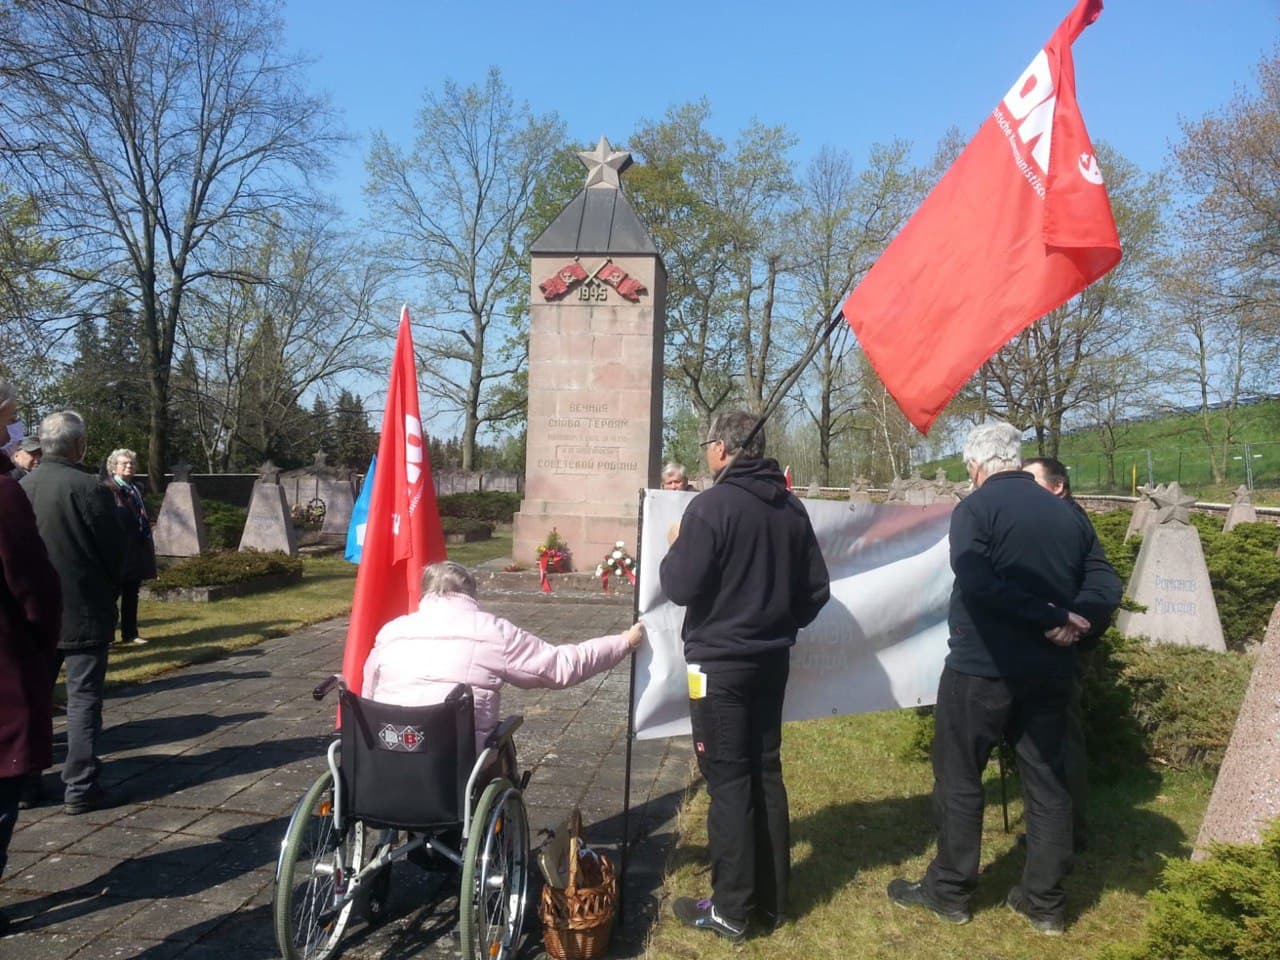 Elsterwerda - Nie wieder! - Antifaschismus, DKP, Geschichte der Arbeiterbewegung - Politik